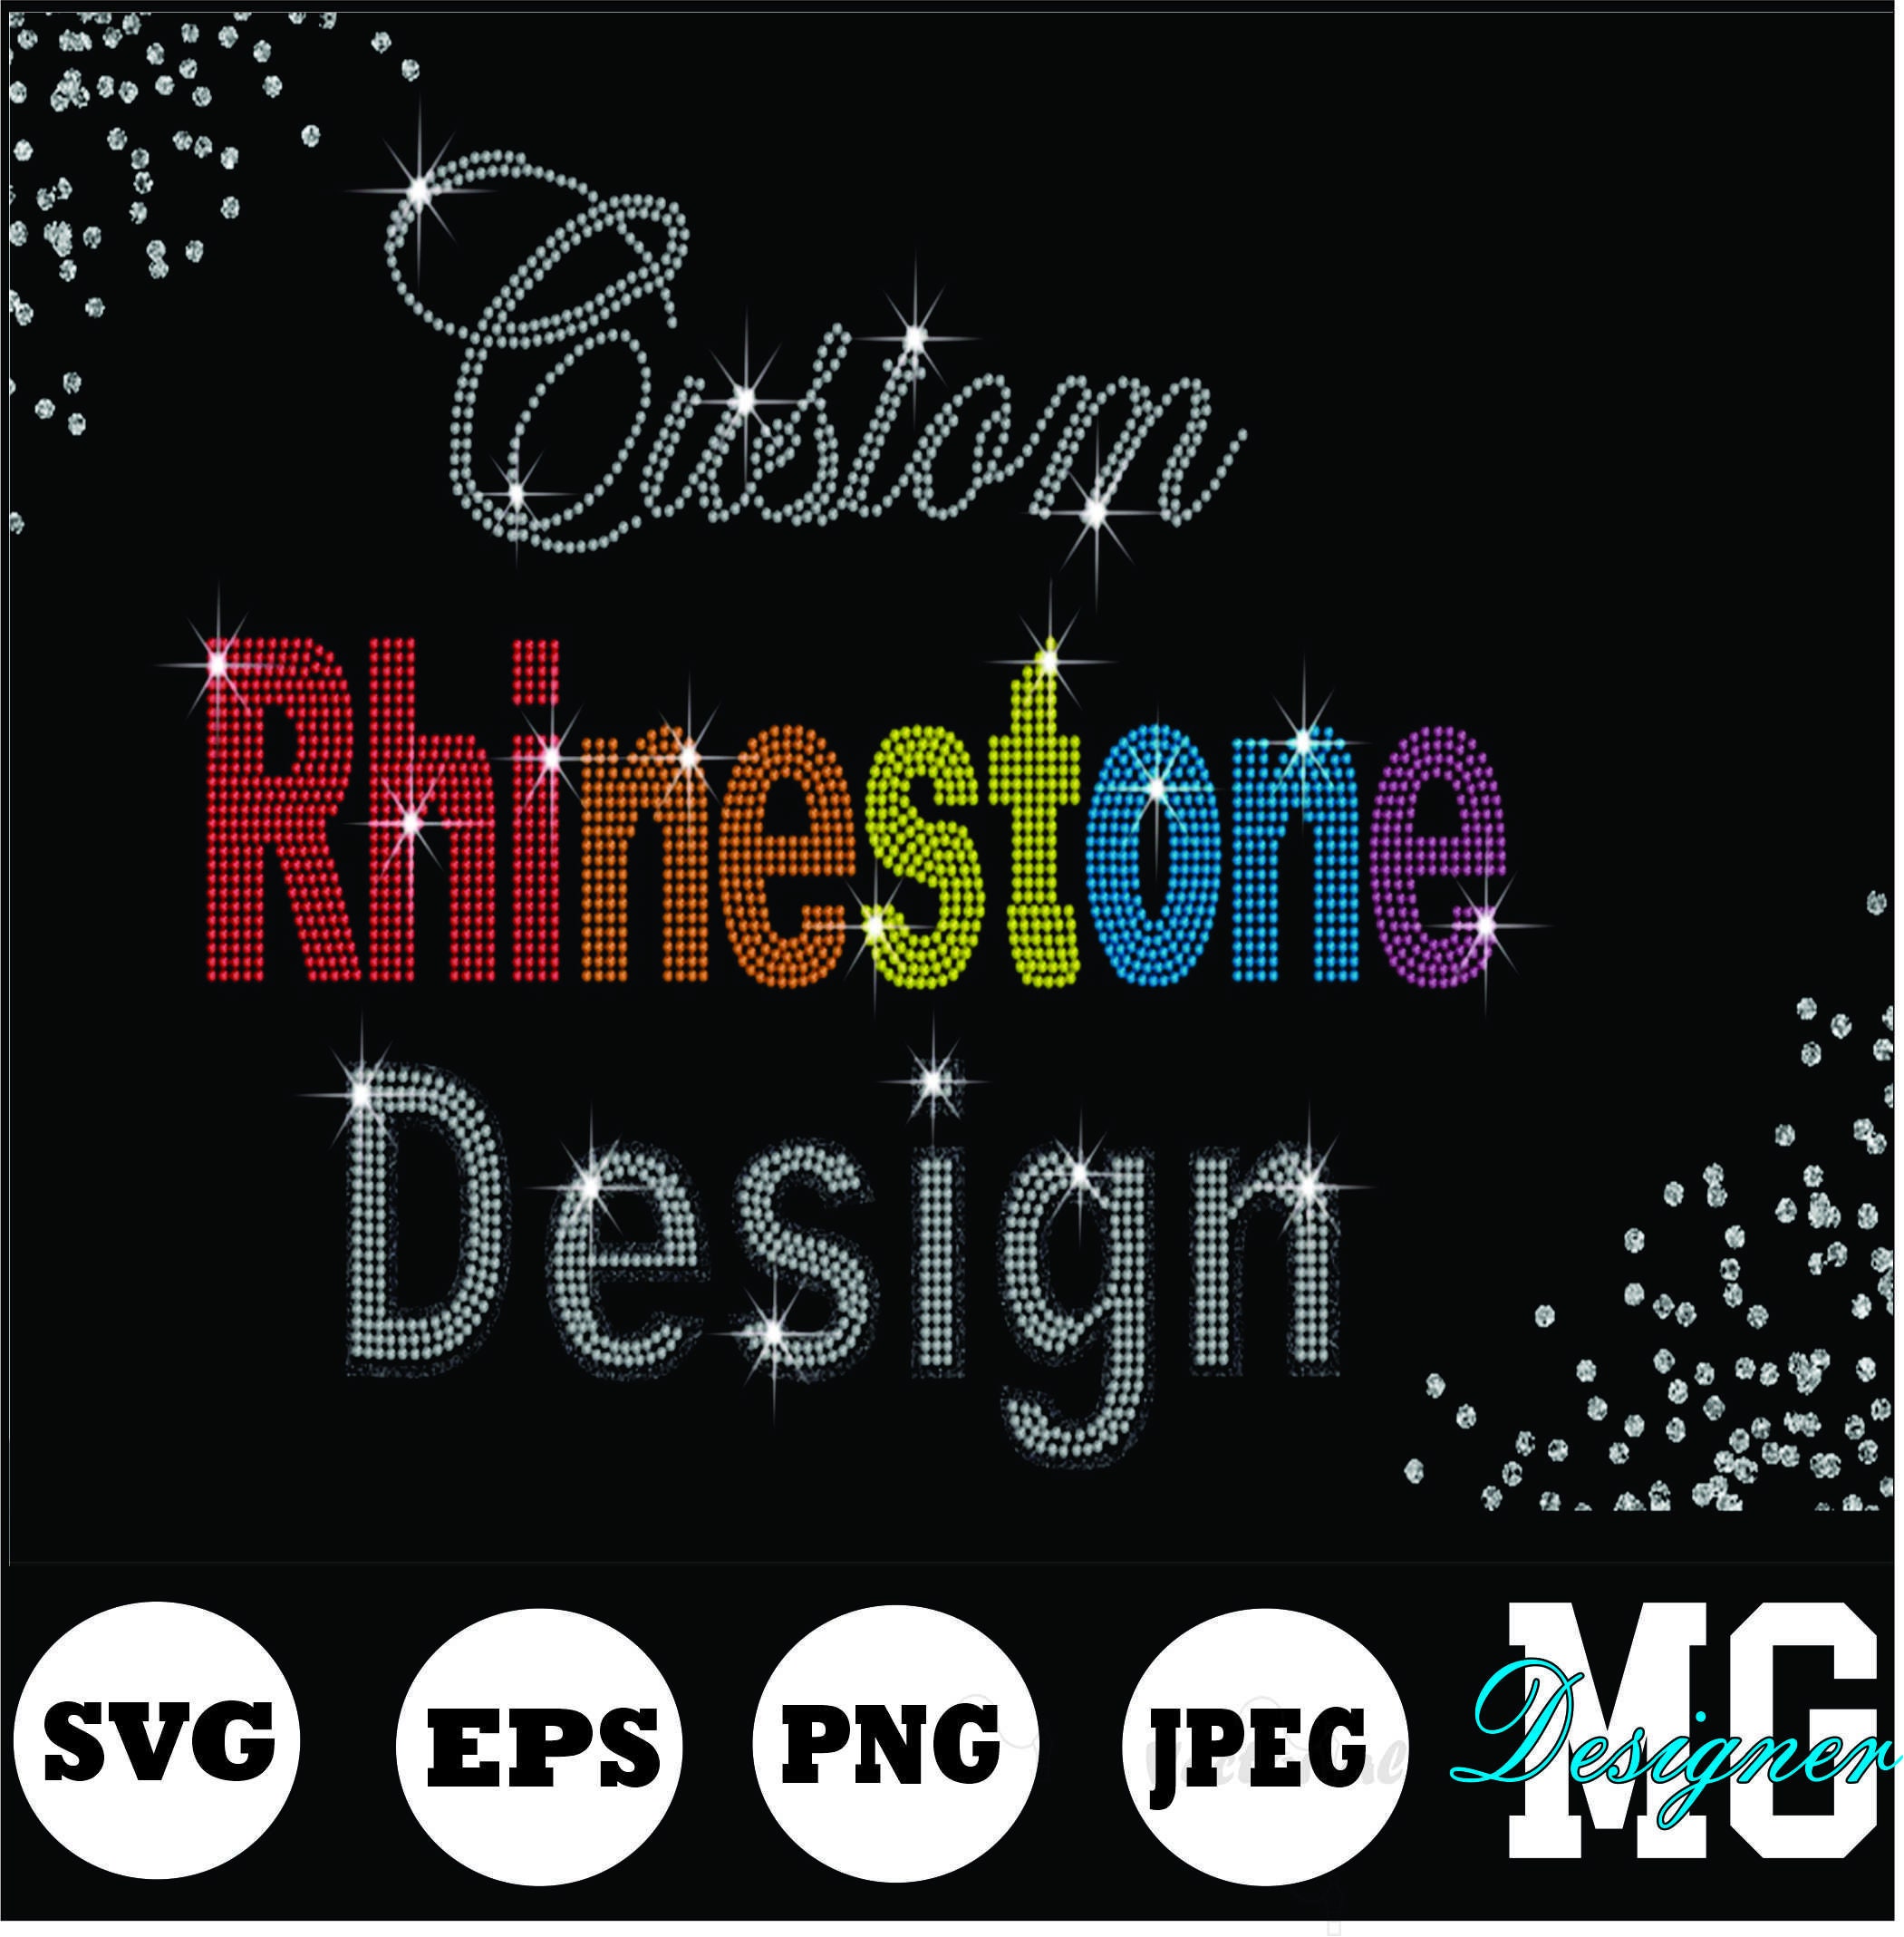 → Lovely Rhinestone font BGARTscript8 - typeable bling diamond font